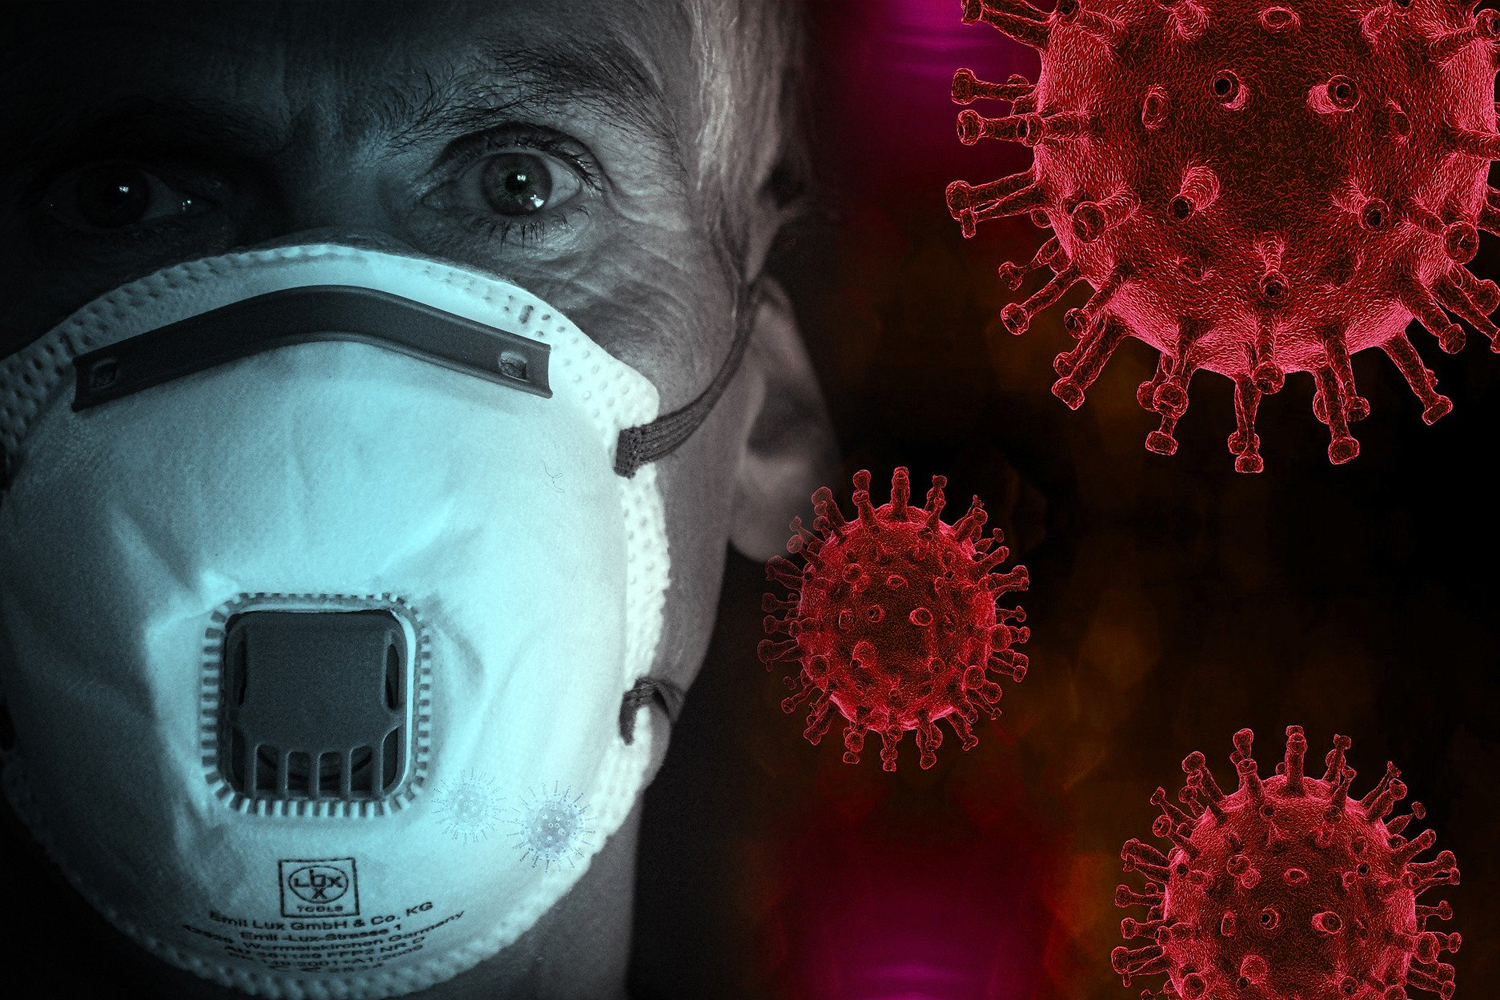 estarias de acuerdo que personas con sintomas de gripe usen mascarillas en espacio cerrados laverdaddemonagas.com mascarilla coronavirus nueva web